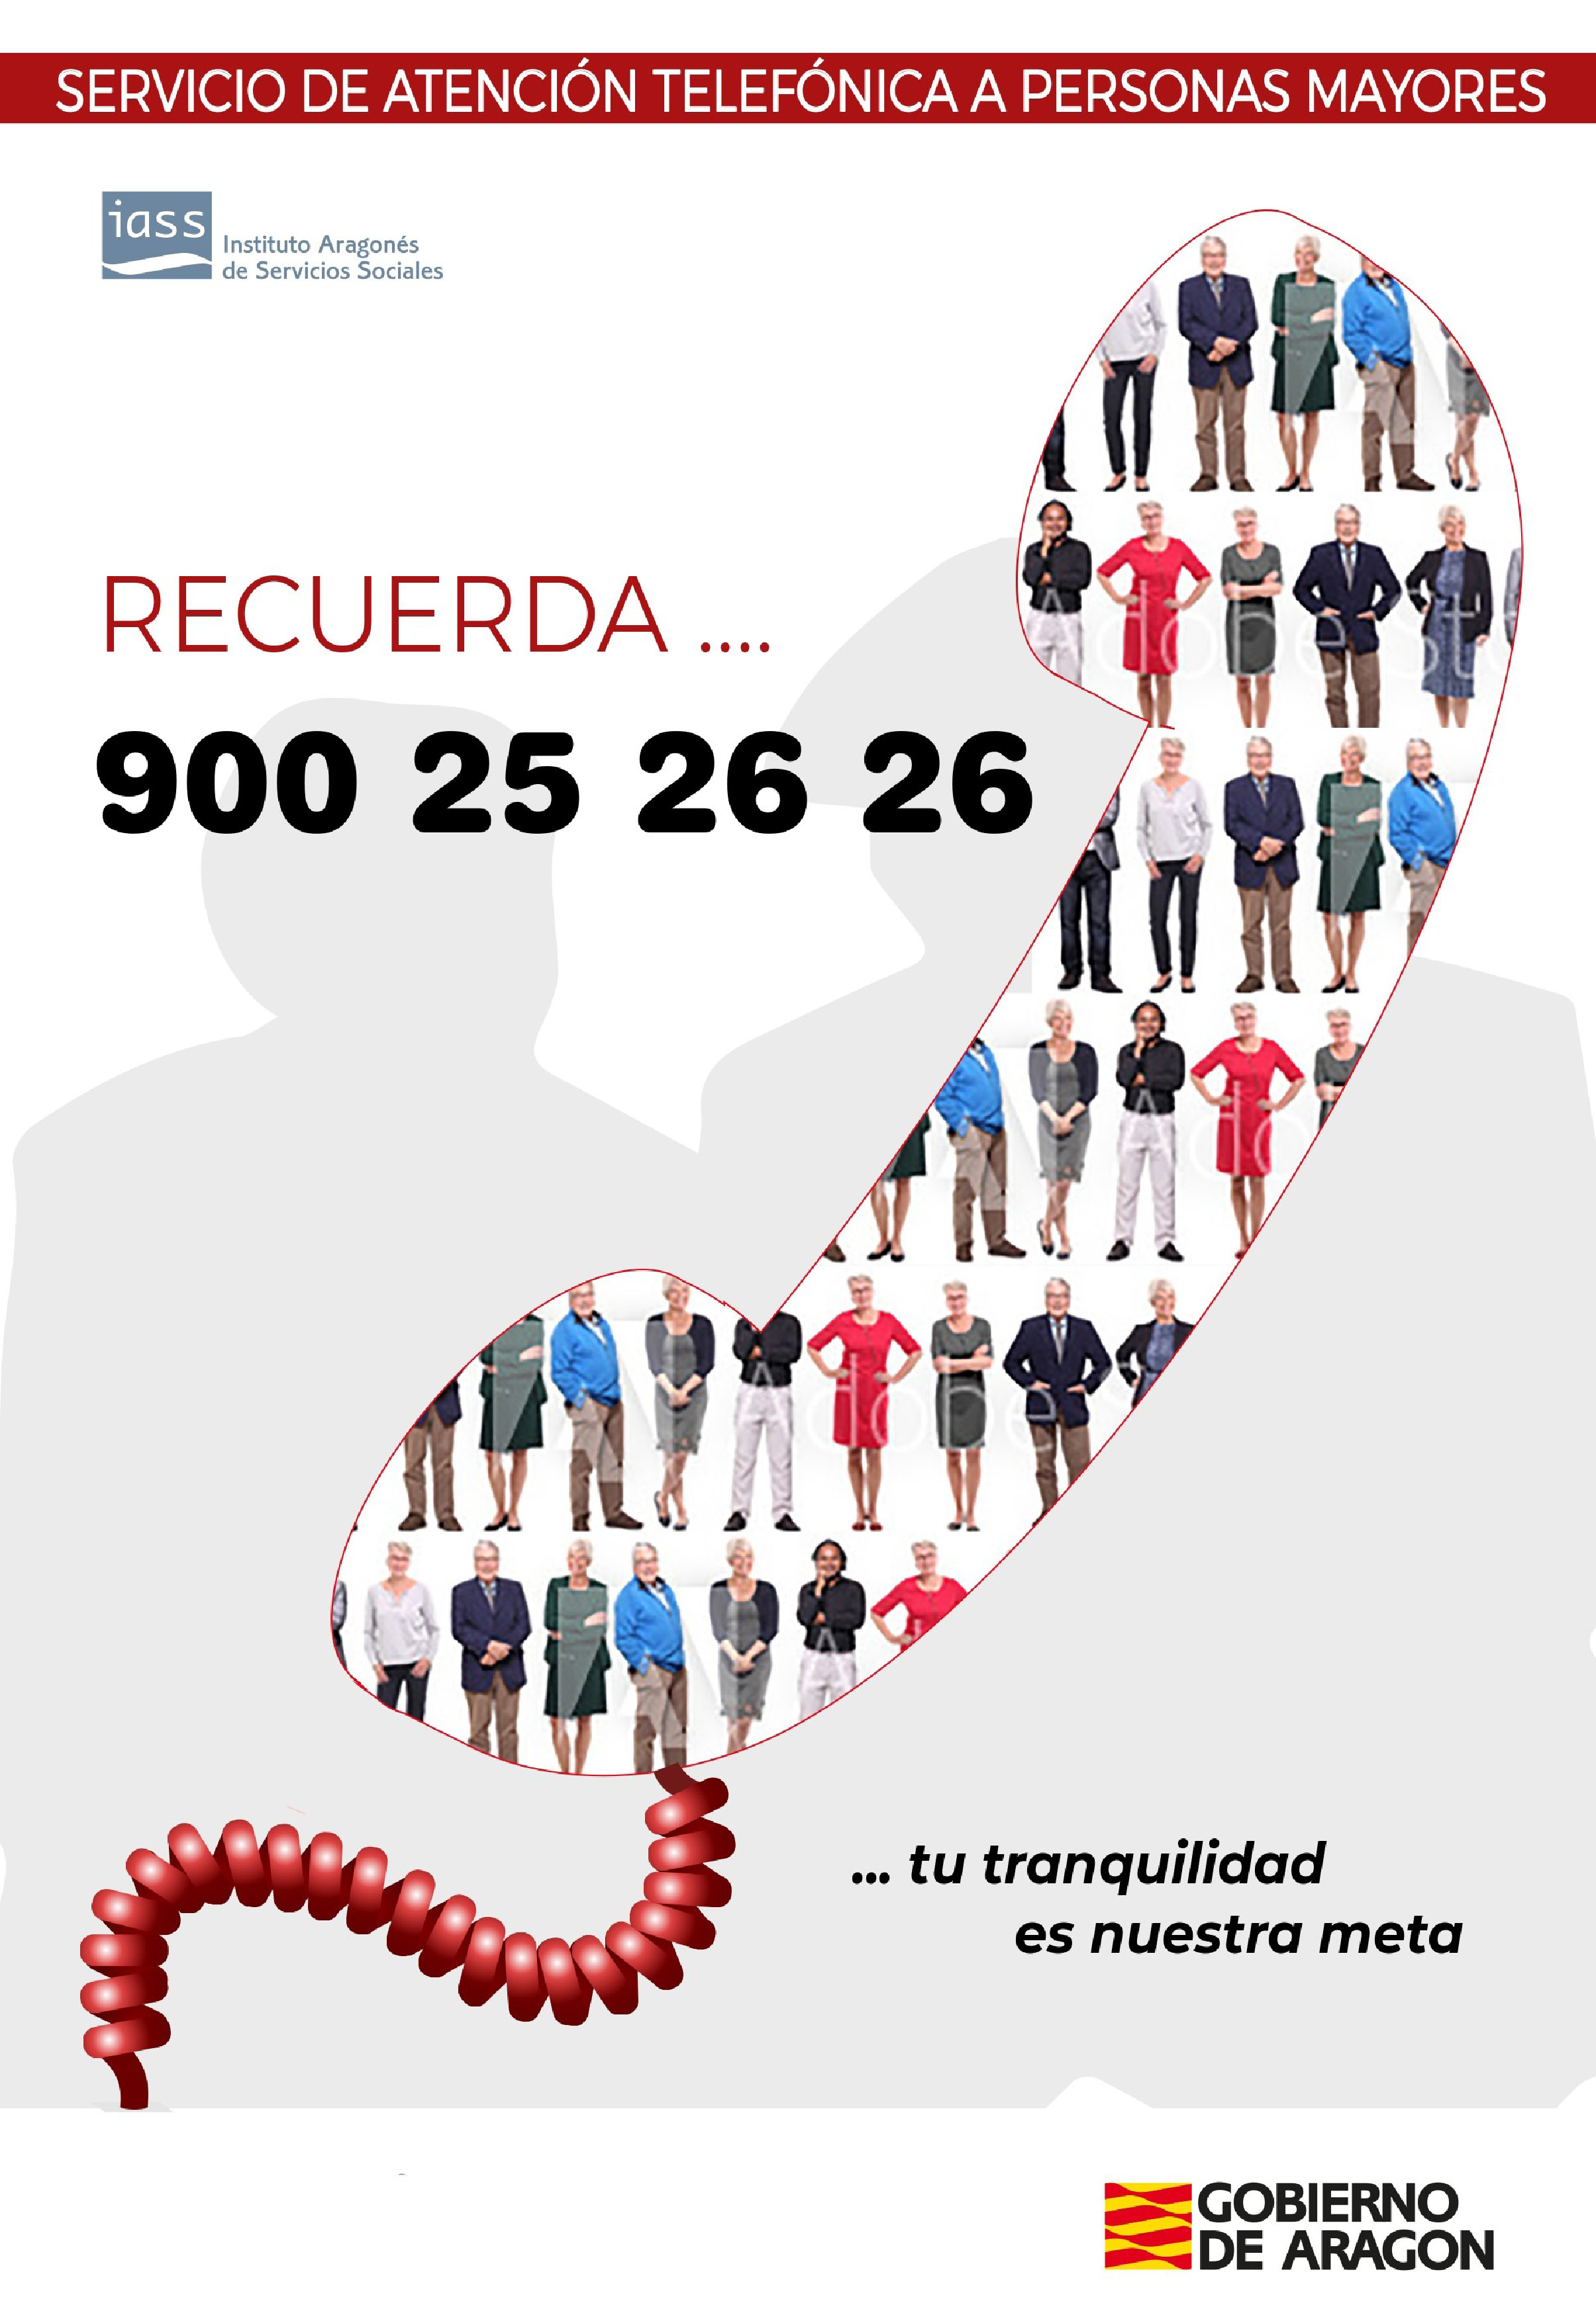 Cartel publicitario del Teléfono de Atención a Personas Mayores de Aragón, 900 25 26 26